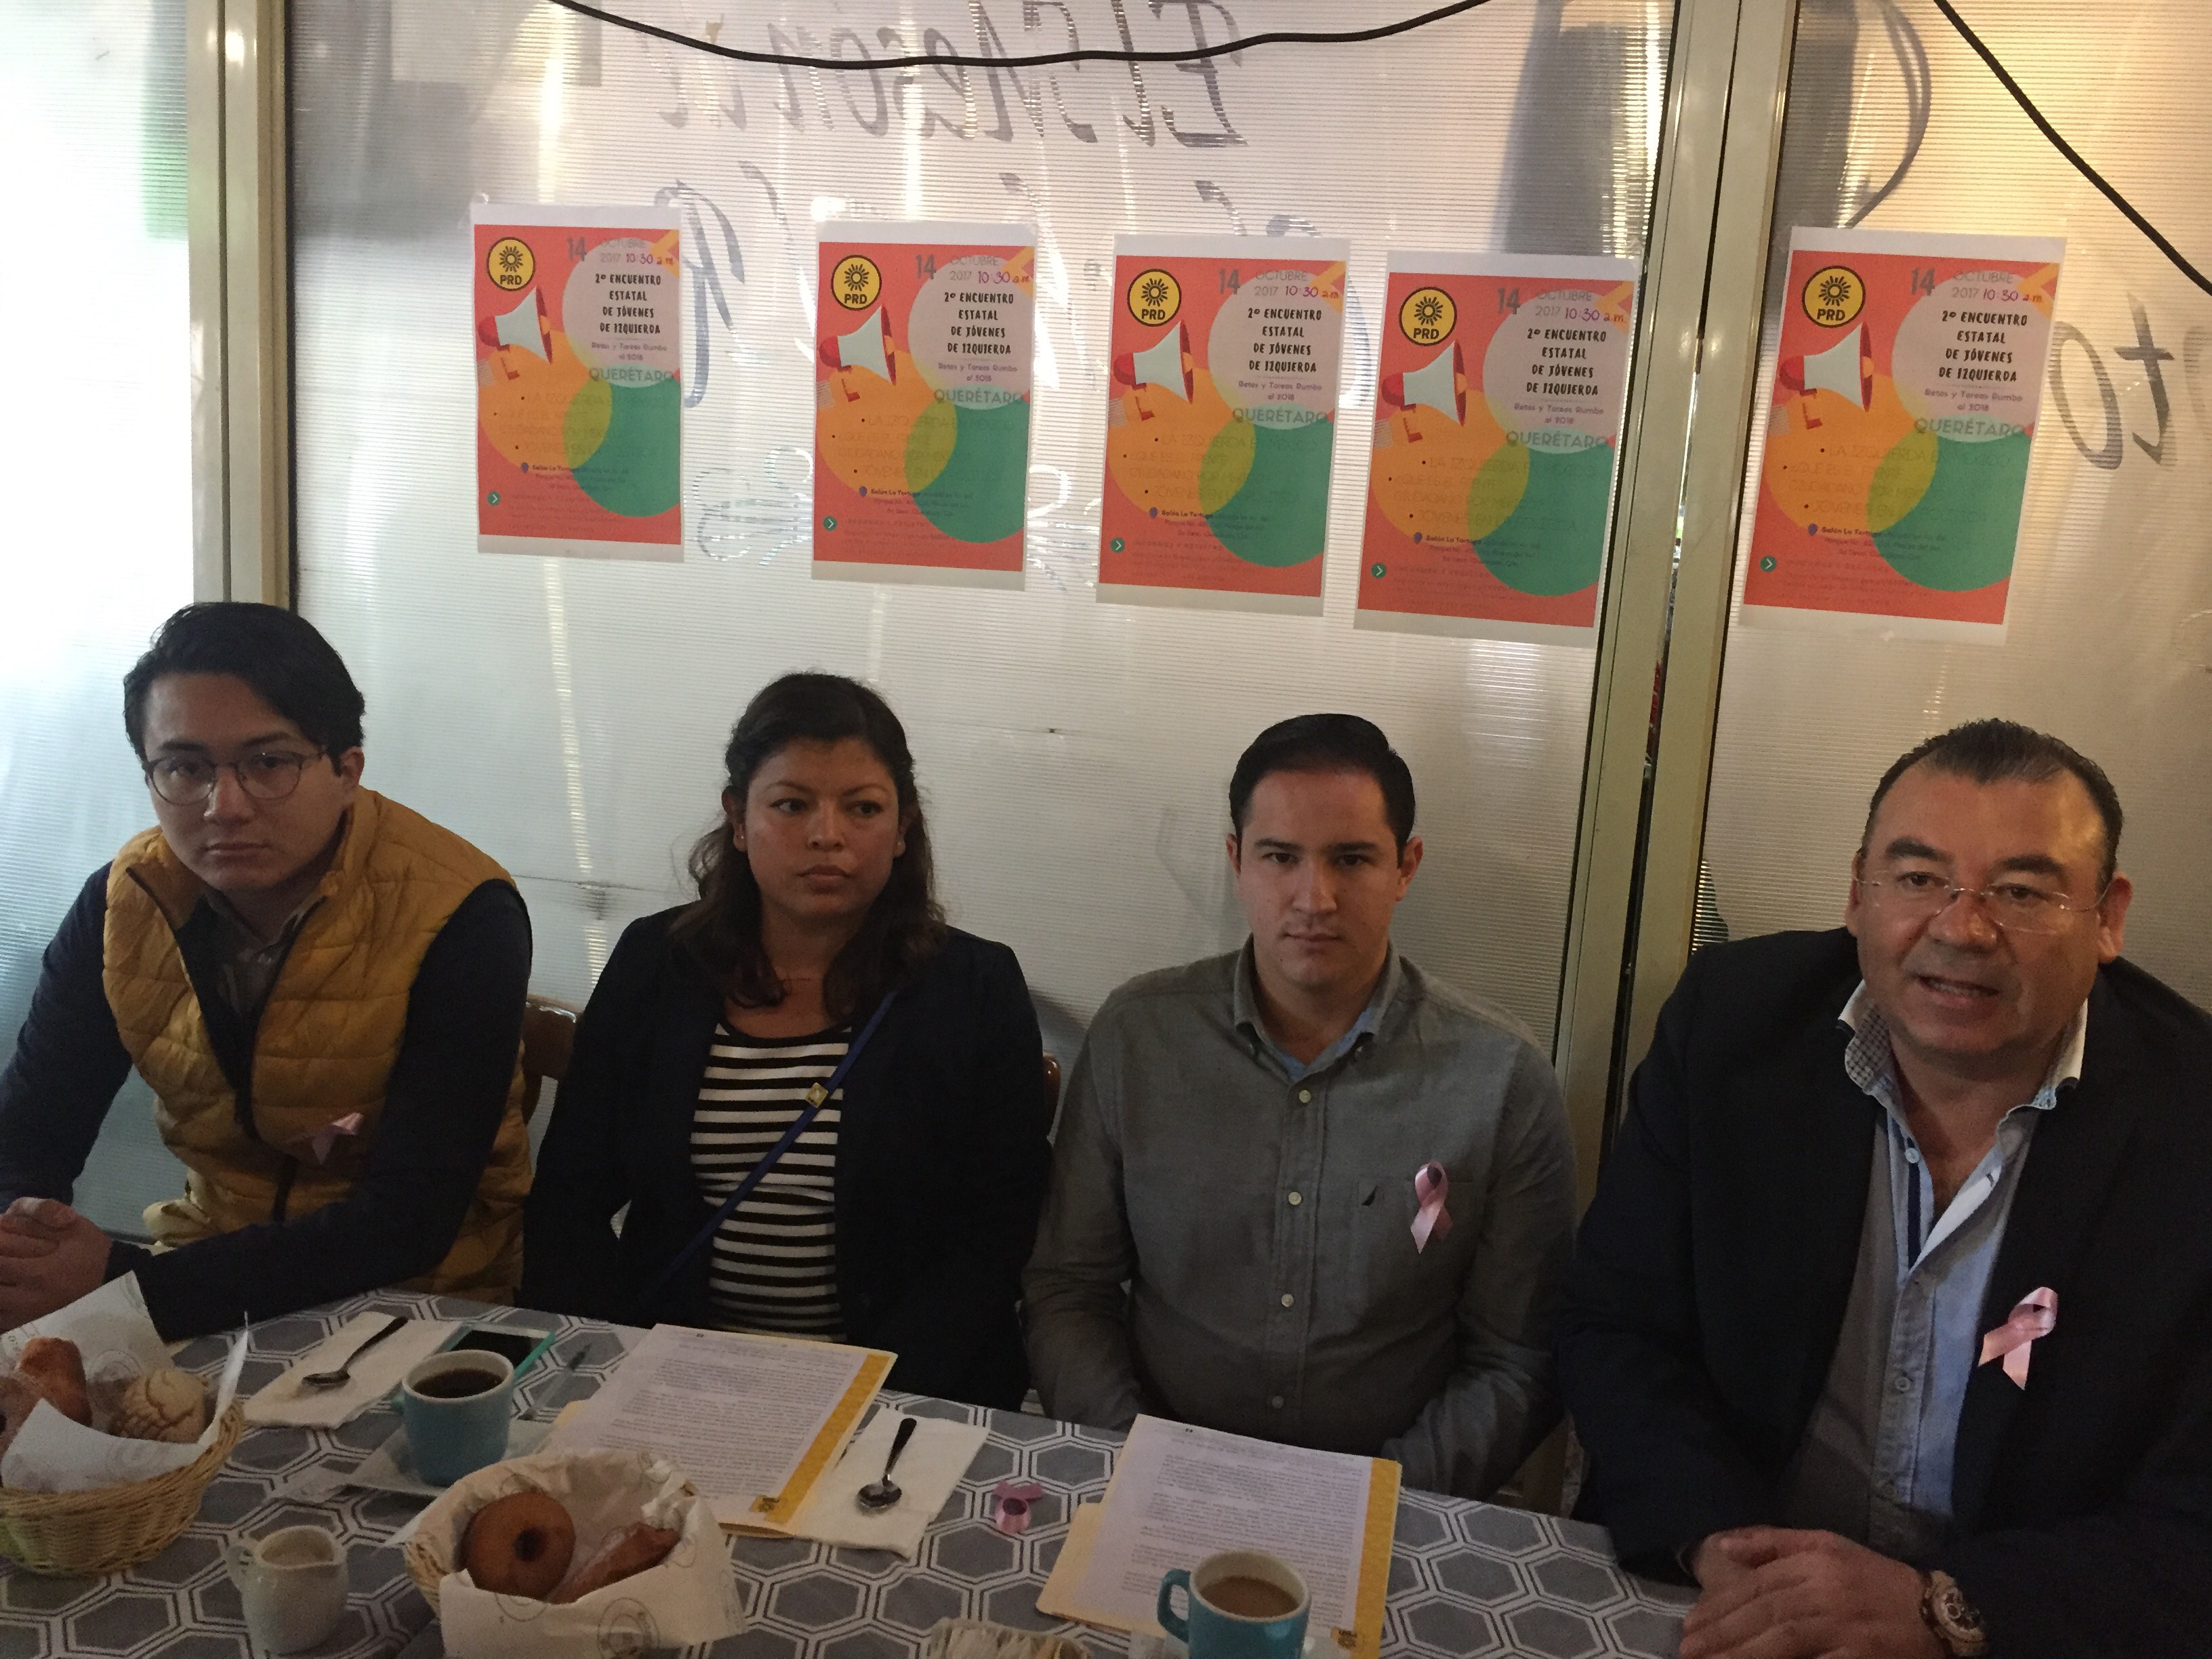  “El PRD de Querétaro ha impulsado la participación activa de los jóvenes en política”: Adolfo Camacho